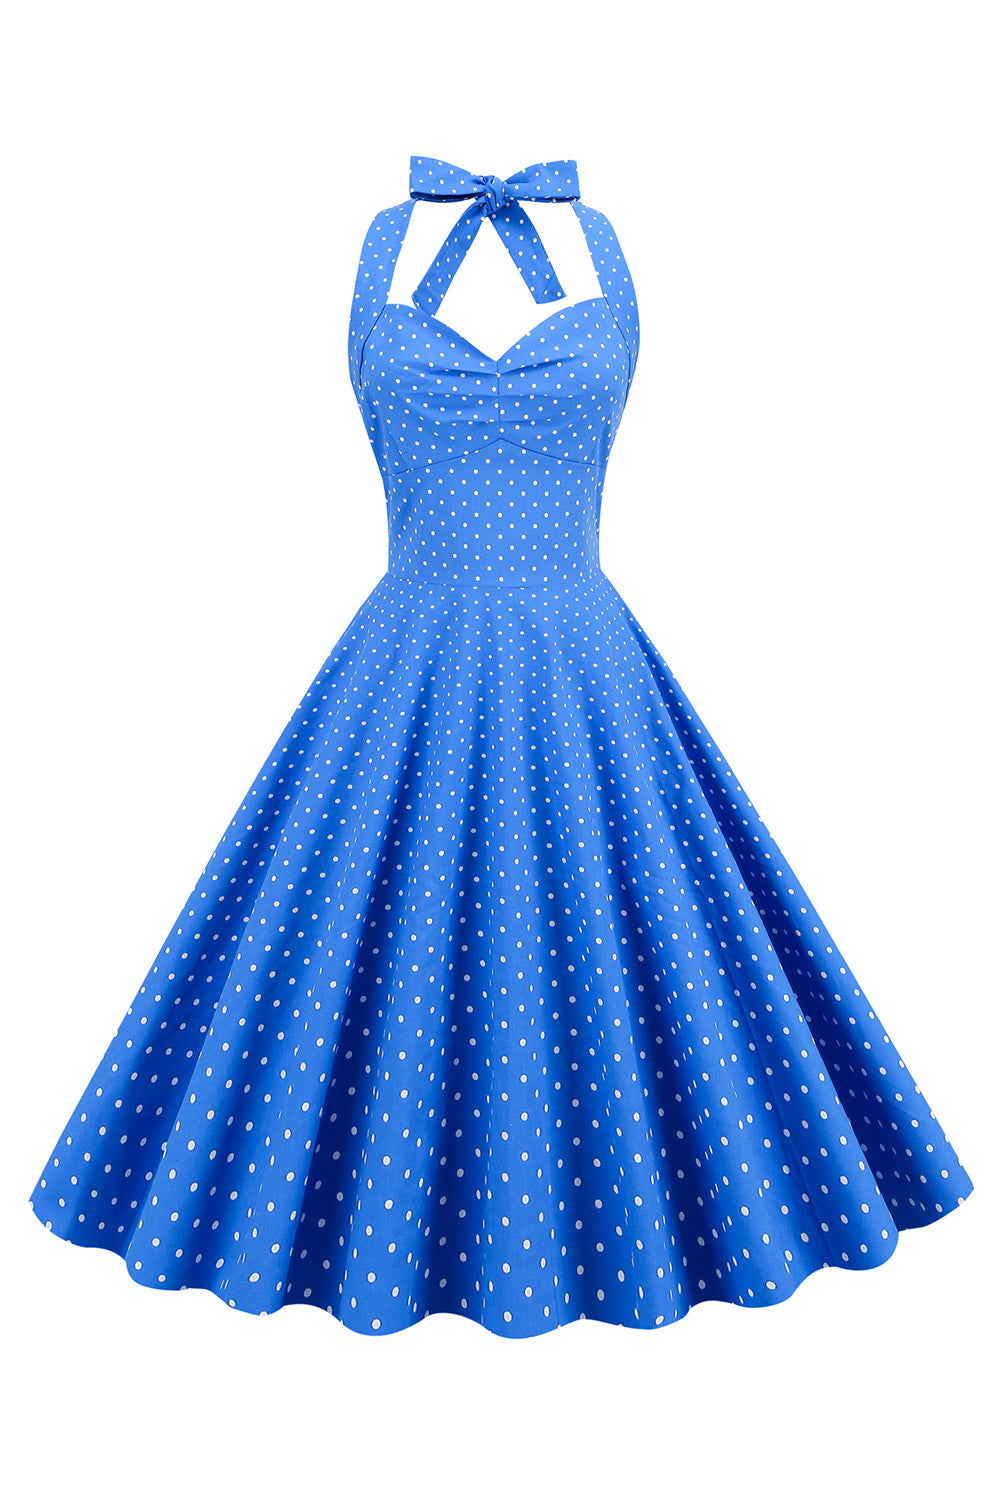 Niebieska Sukienka Pin Up Lata 50 w Groszki